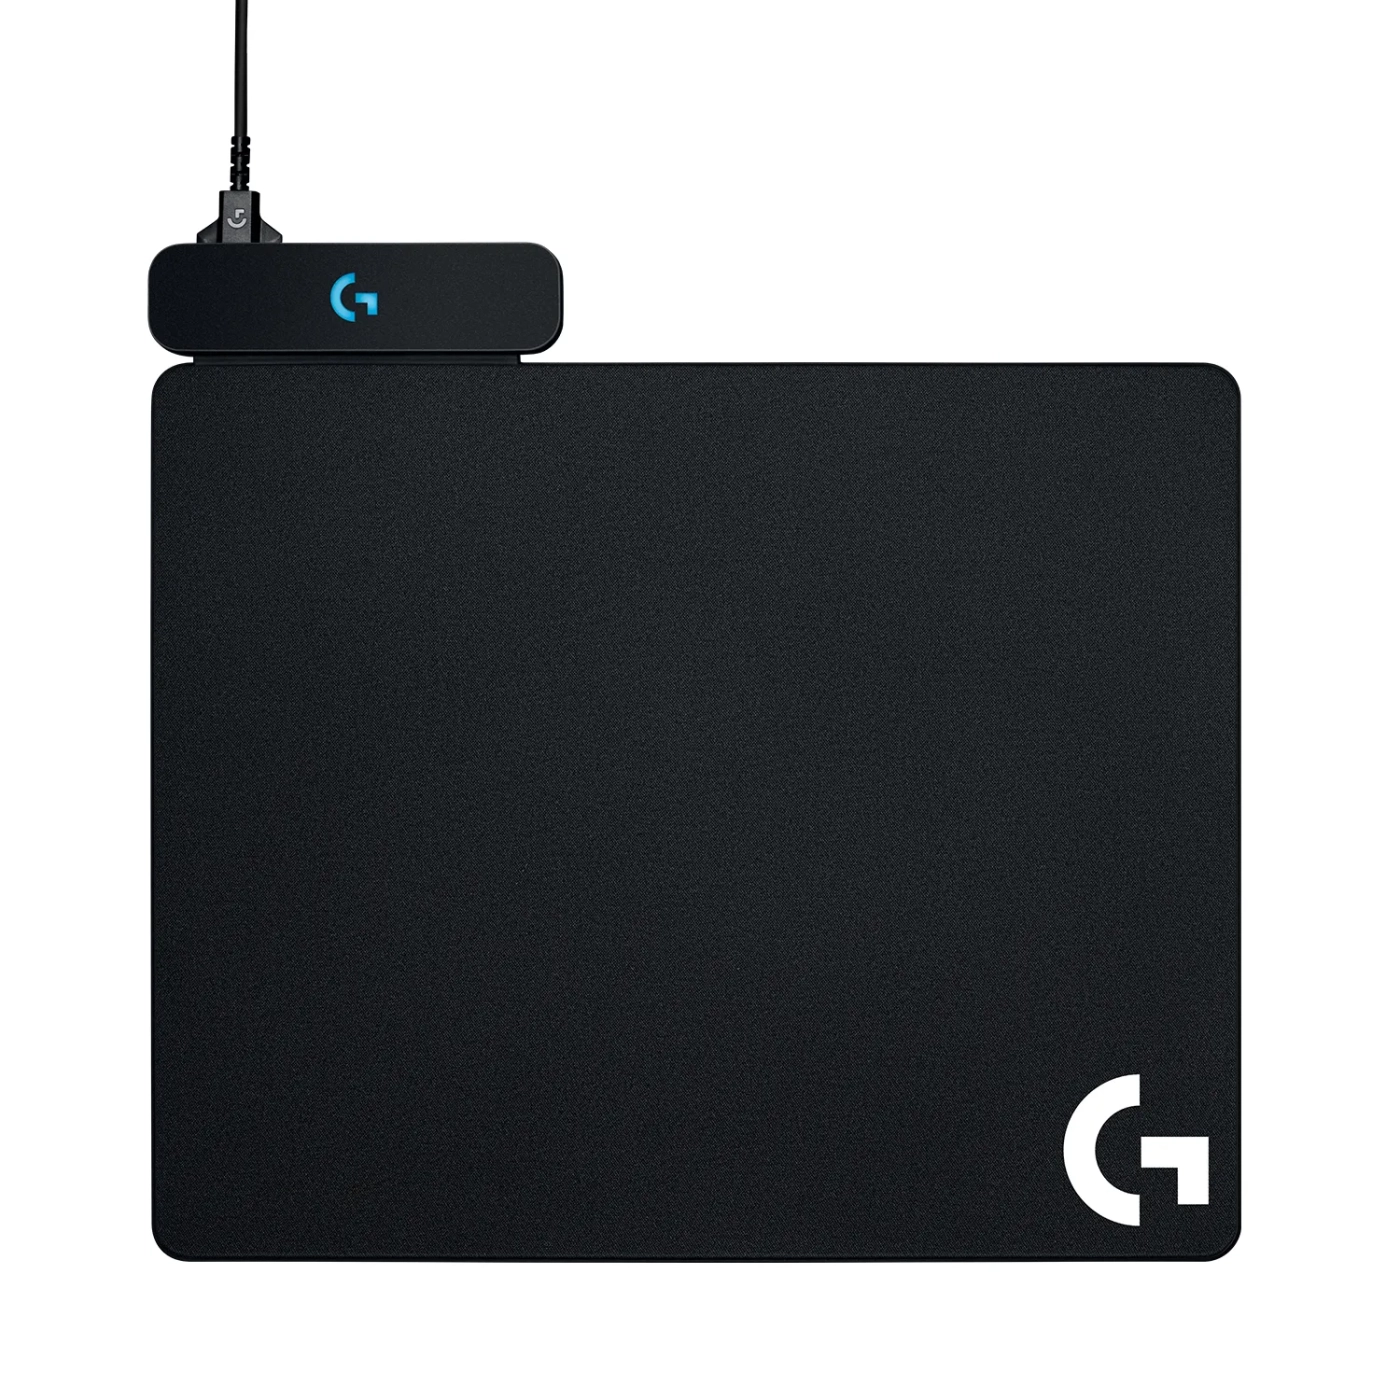 Купить Игровая поверхность Logitech G Power Play Wireless Charging System (943-000110) - фото 1